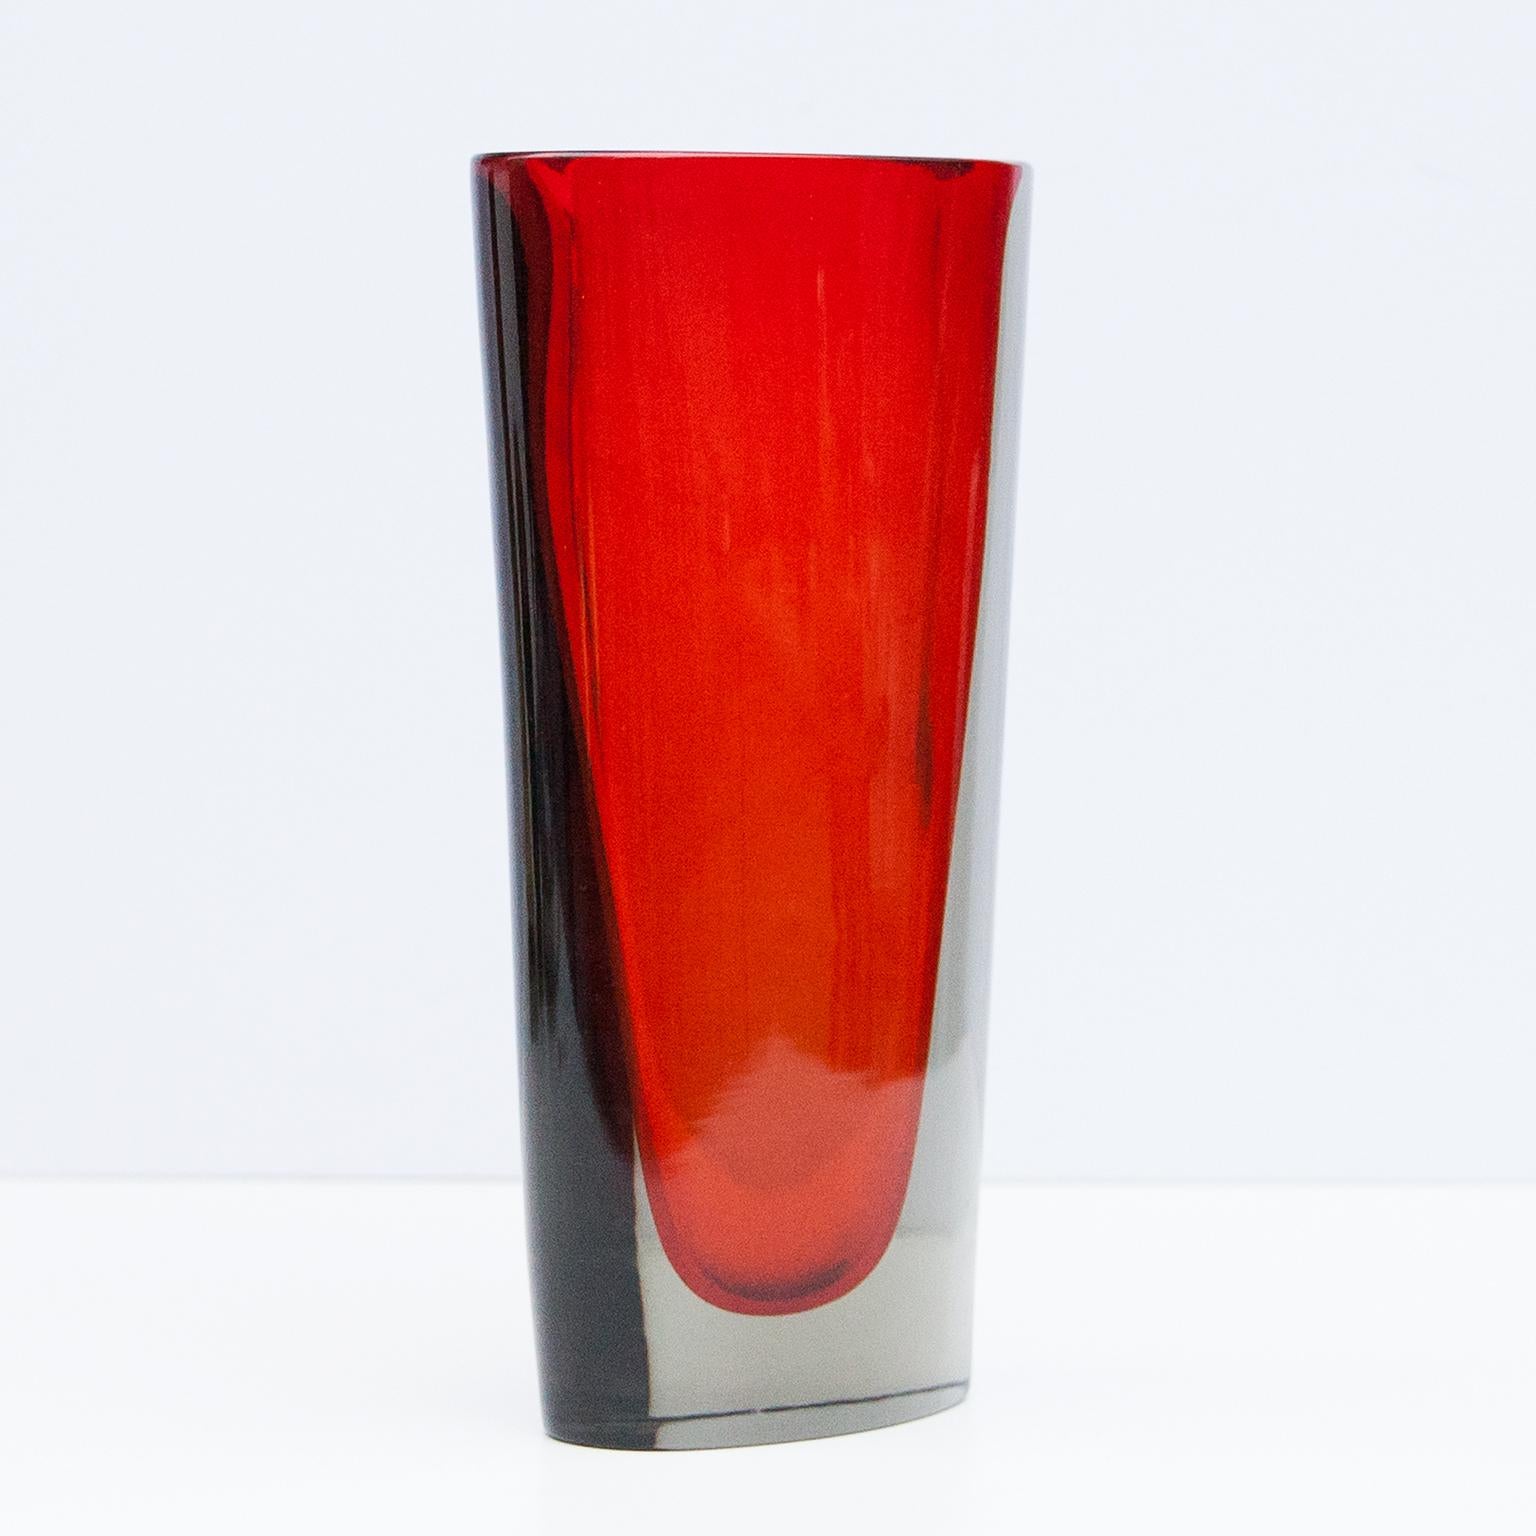 Murano-Vase aus rotem und klarem Murano-Glas, entworfen von Flavio Poli für Seguso, Italien 1960er Jahre.

